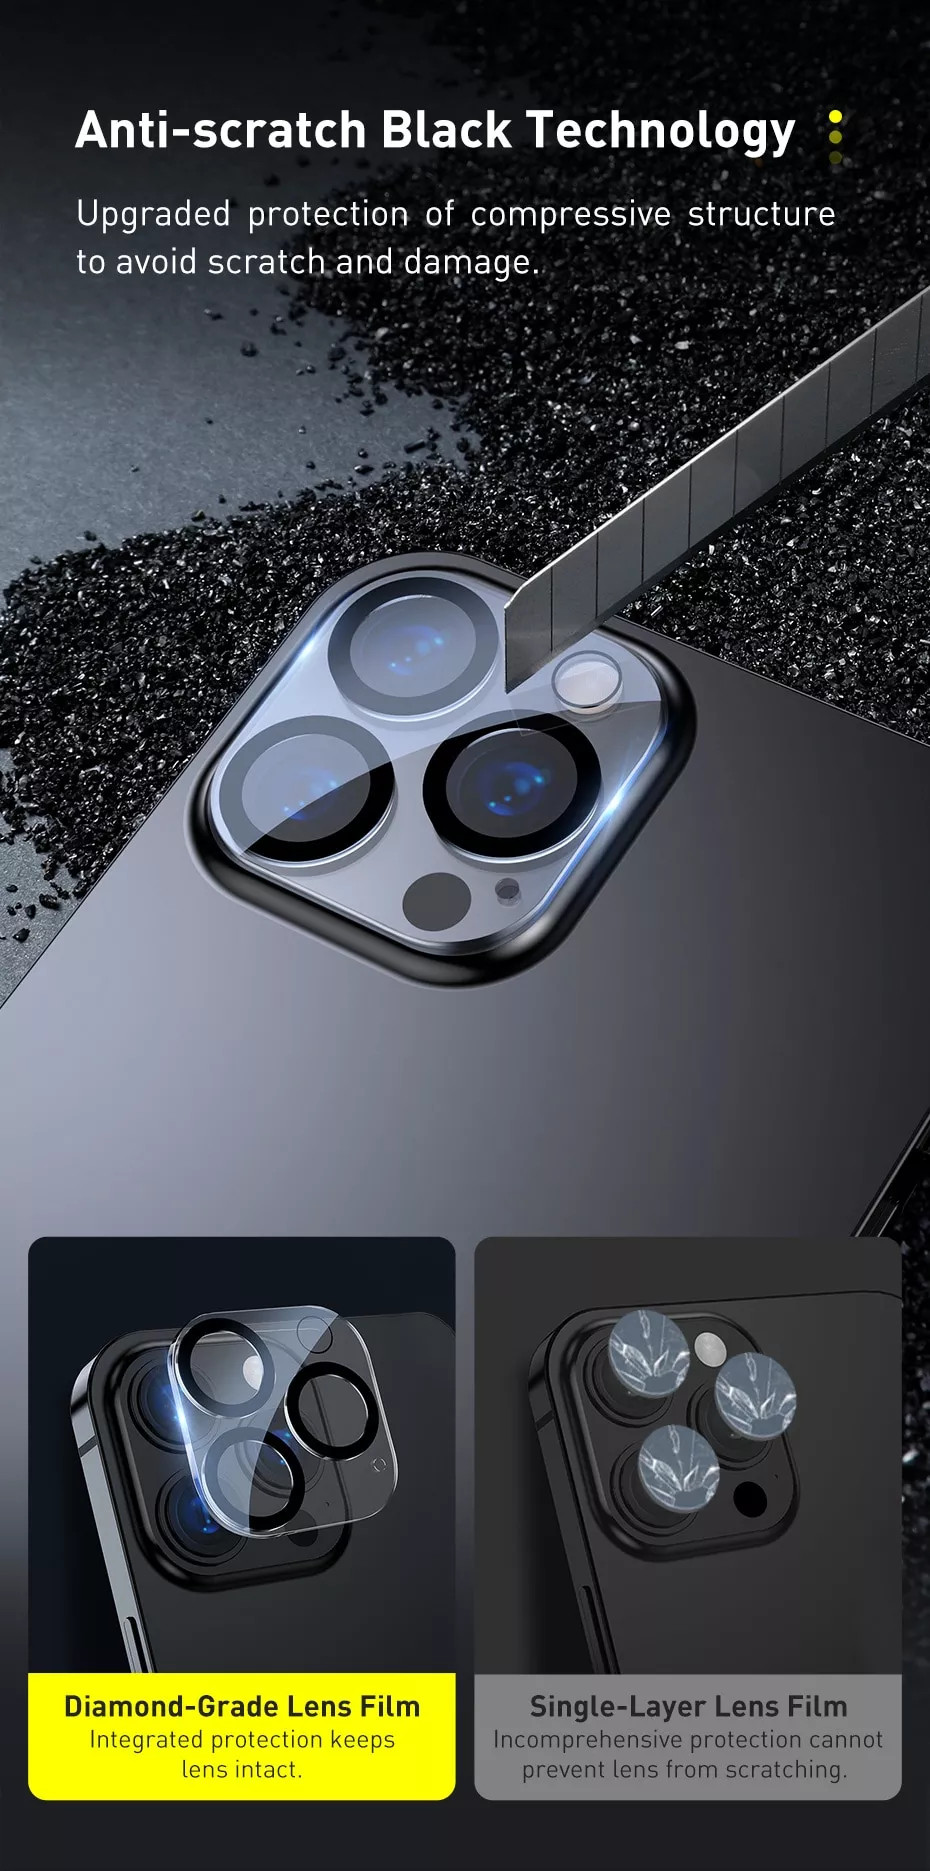 Bộ 2 miếng dán kính cường lực Full bảo vệ Camera cho iPhone 13 Pro / 13 Pro Max hiệu Baseus Full-Frame Lens Film 